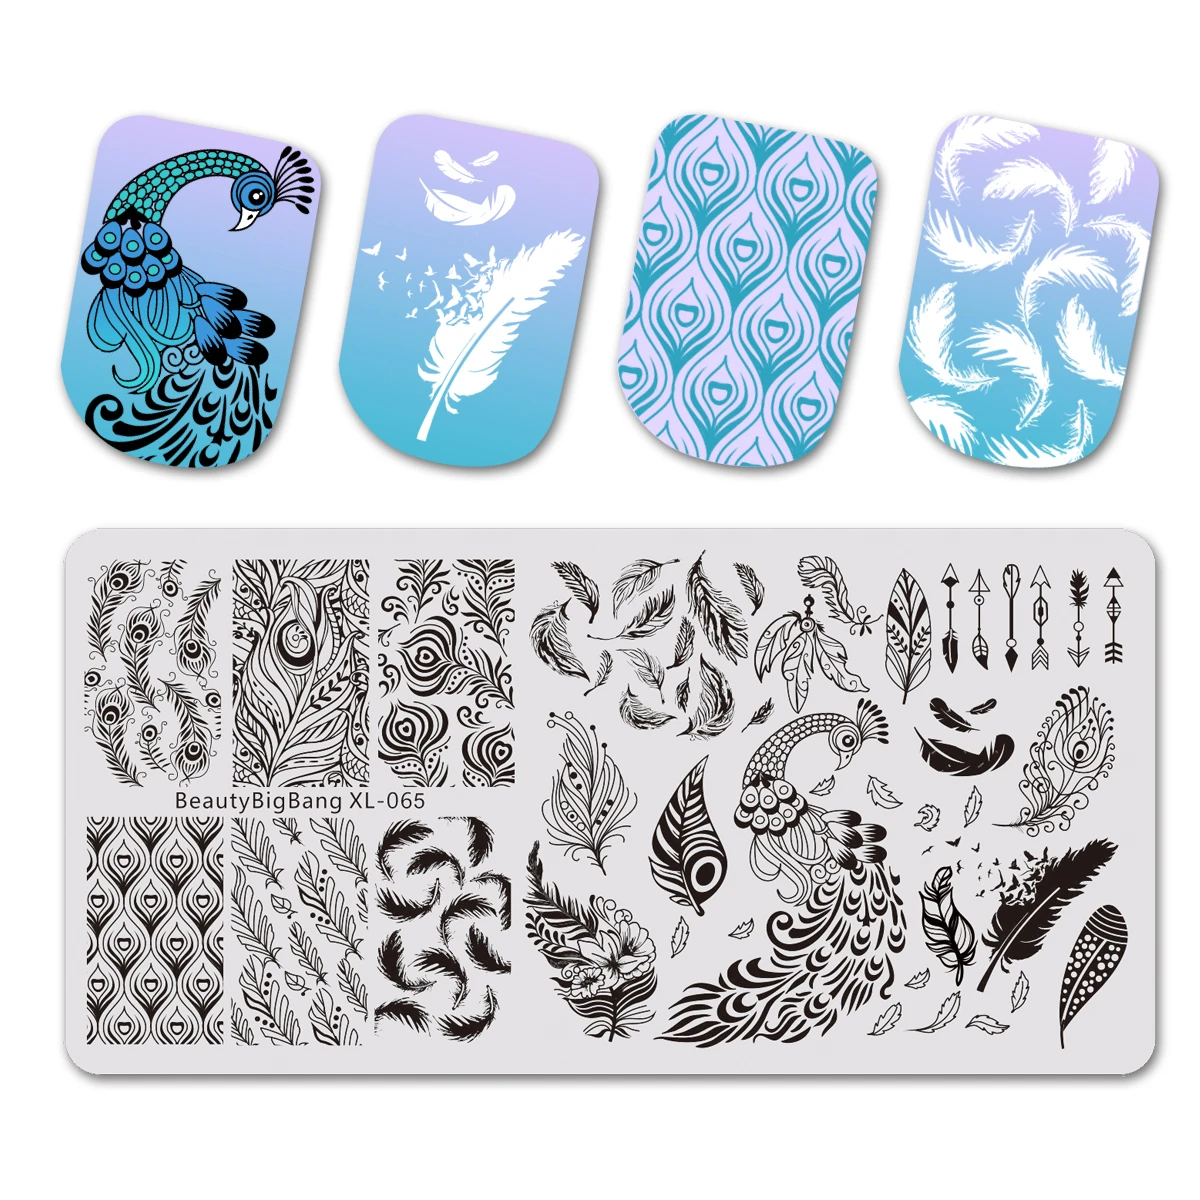 BeautyBigBang 6*12 см прямоугольная пластина для штамповки ногтей птицы перо павлина шаблон изображения пластины шаблон для дизайна ногтей трафарет слайдеры